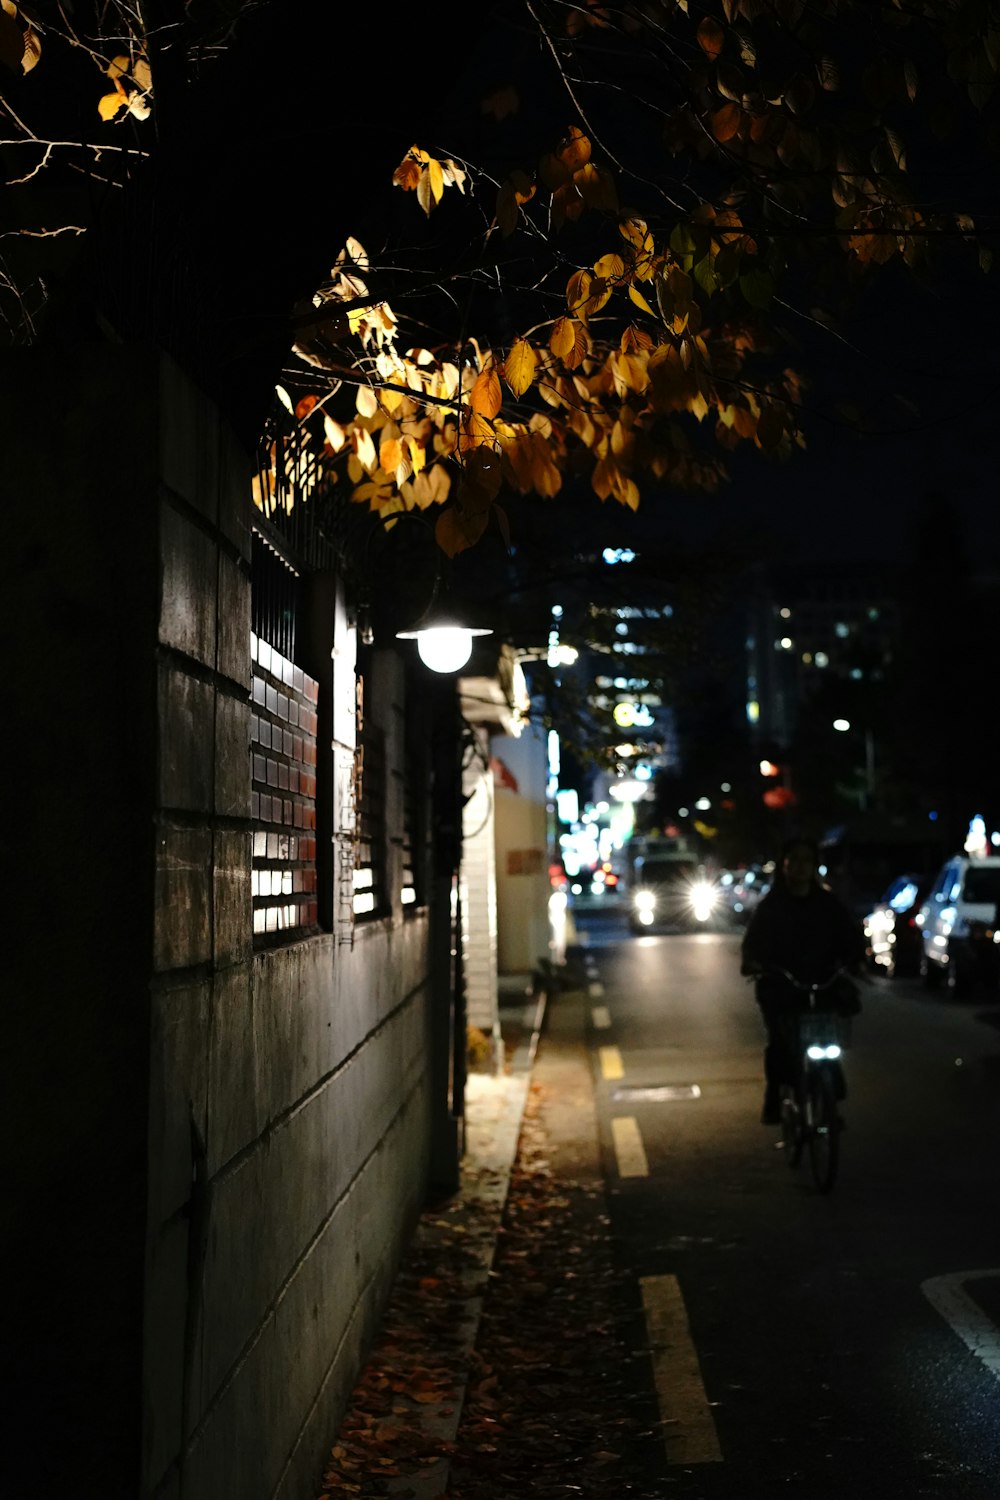 Hombre en chaqueta negra montando en bicicleta en la acera durante la noche